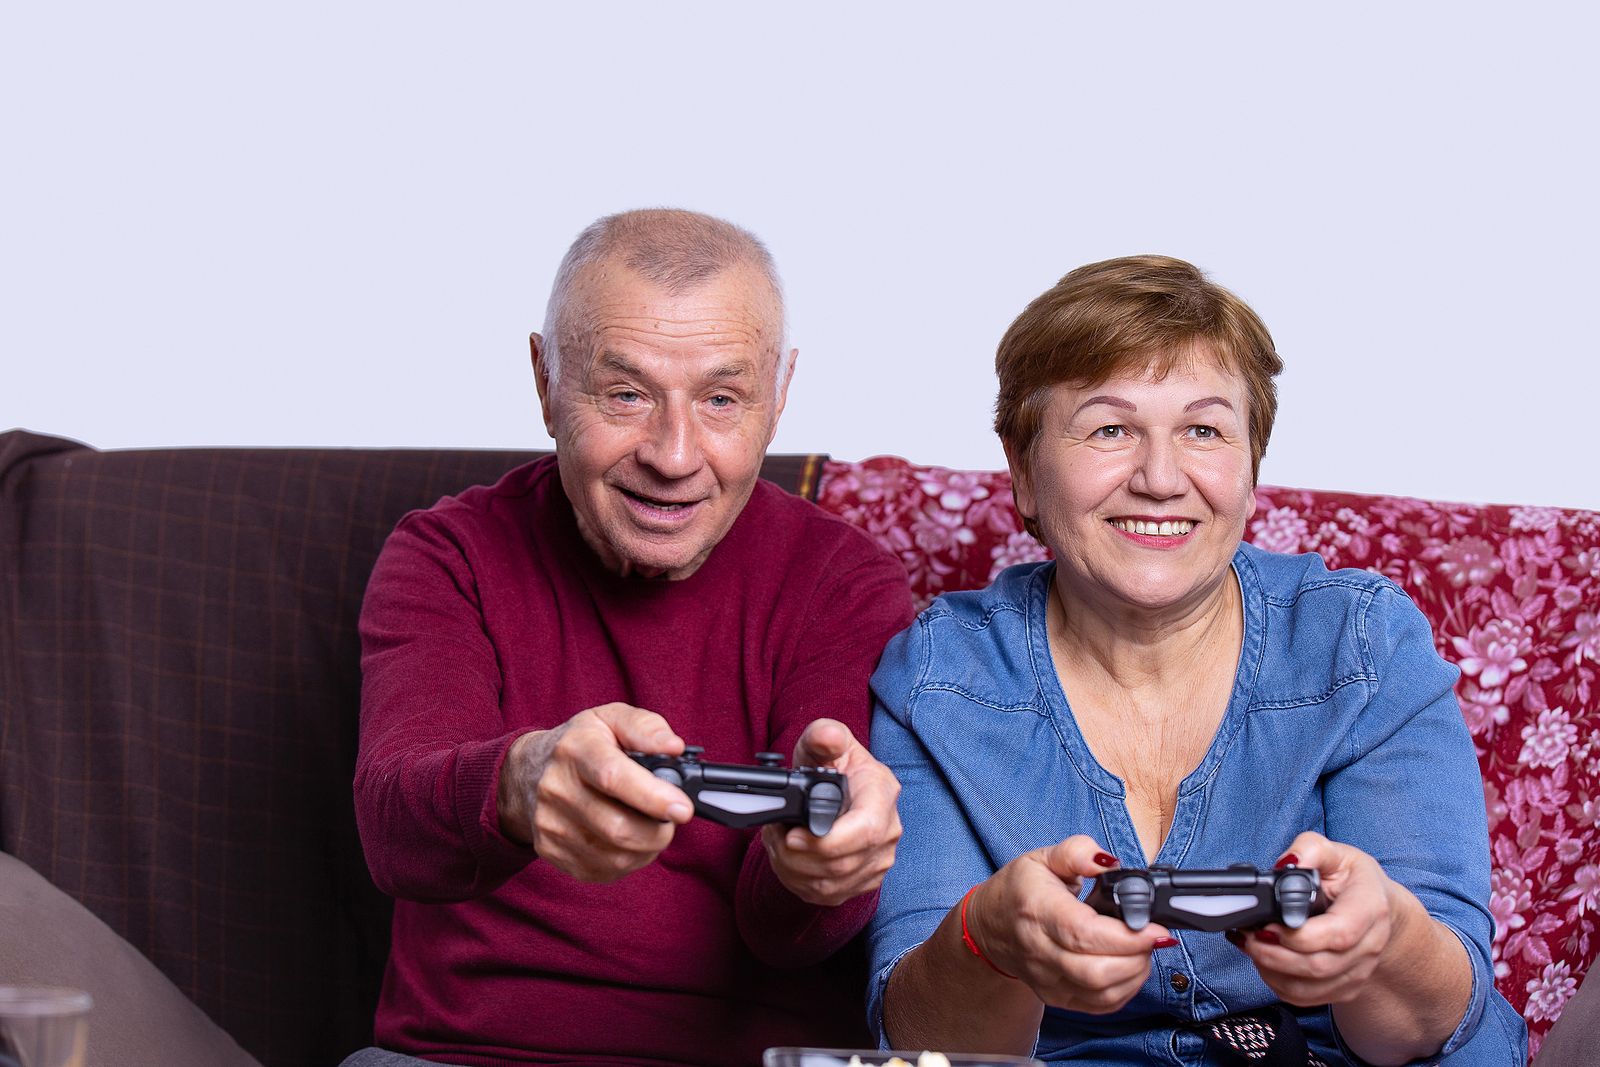 Premian un estudio español sobre los beneficios de los videojuegos en el envejecimiento activo